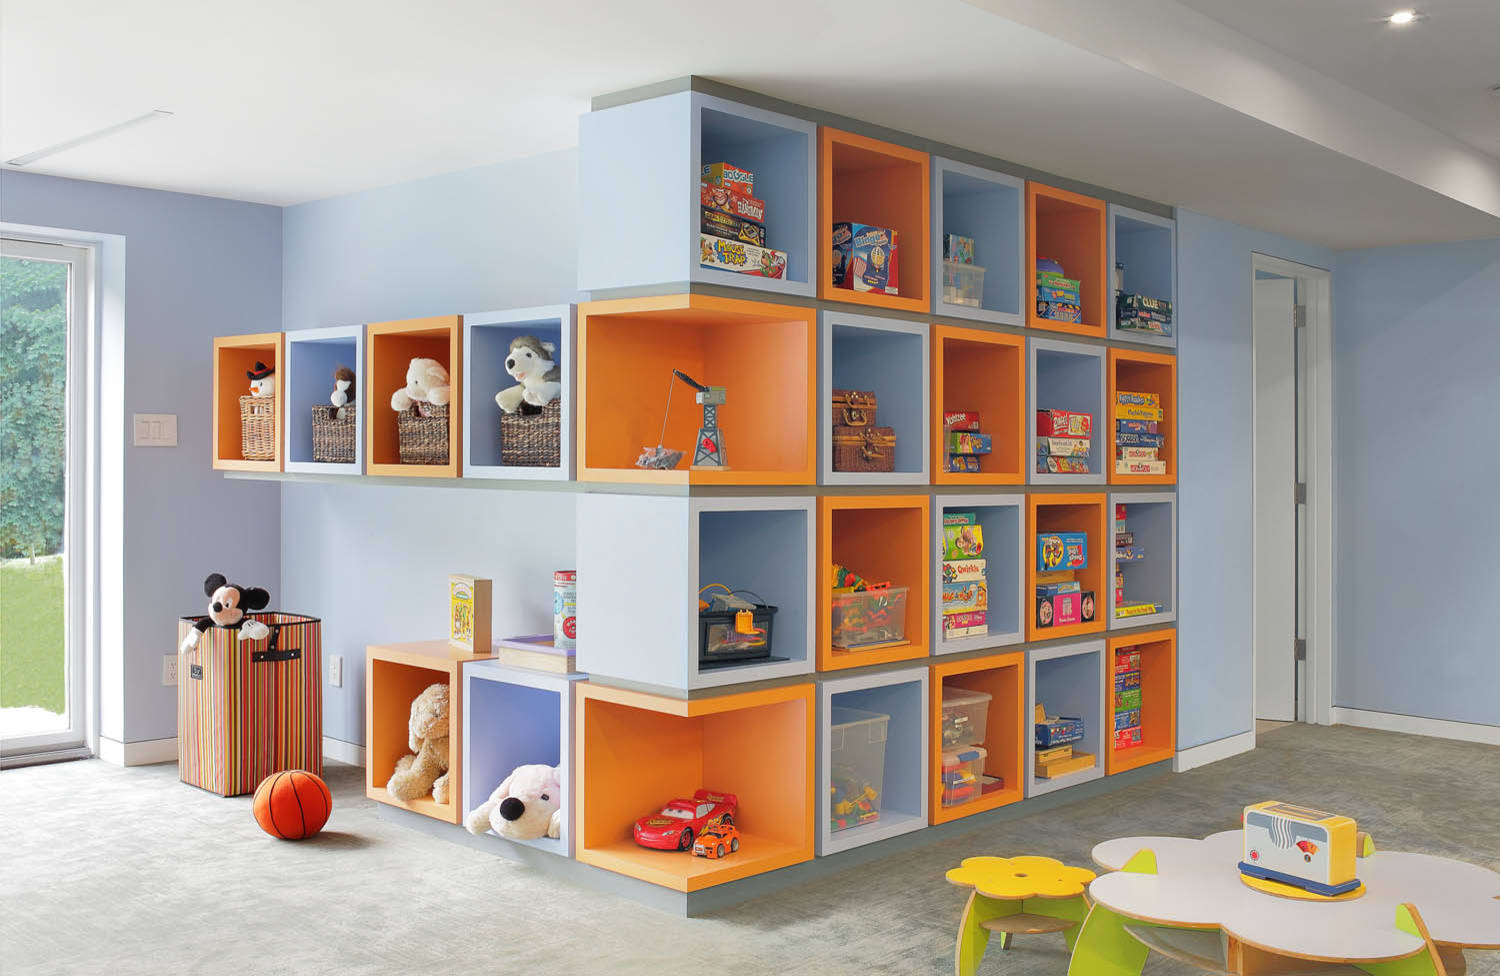 11 wall of cubes toy organization idea homebnc.jpg